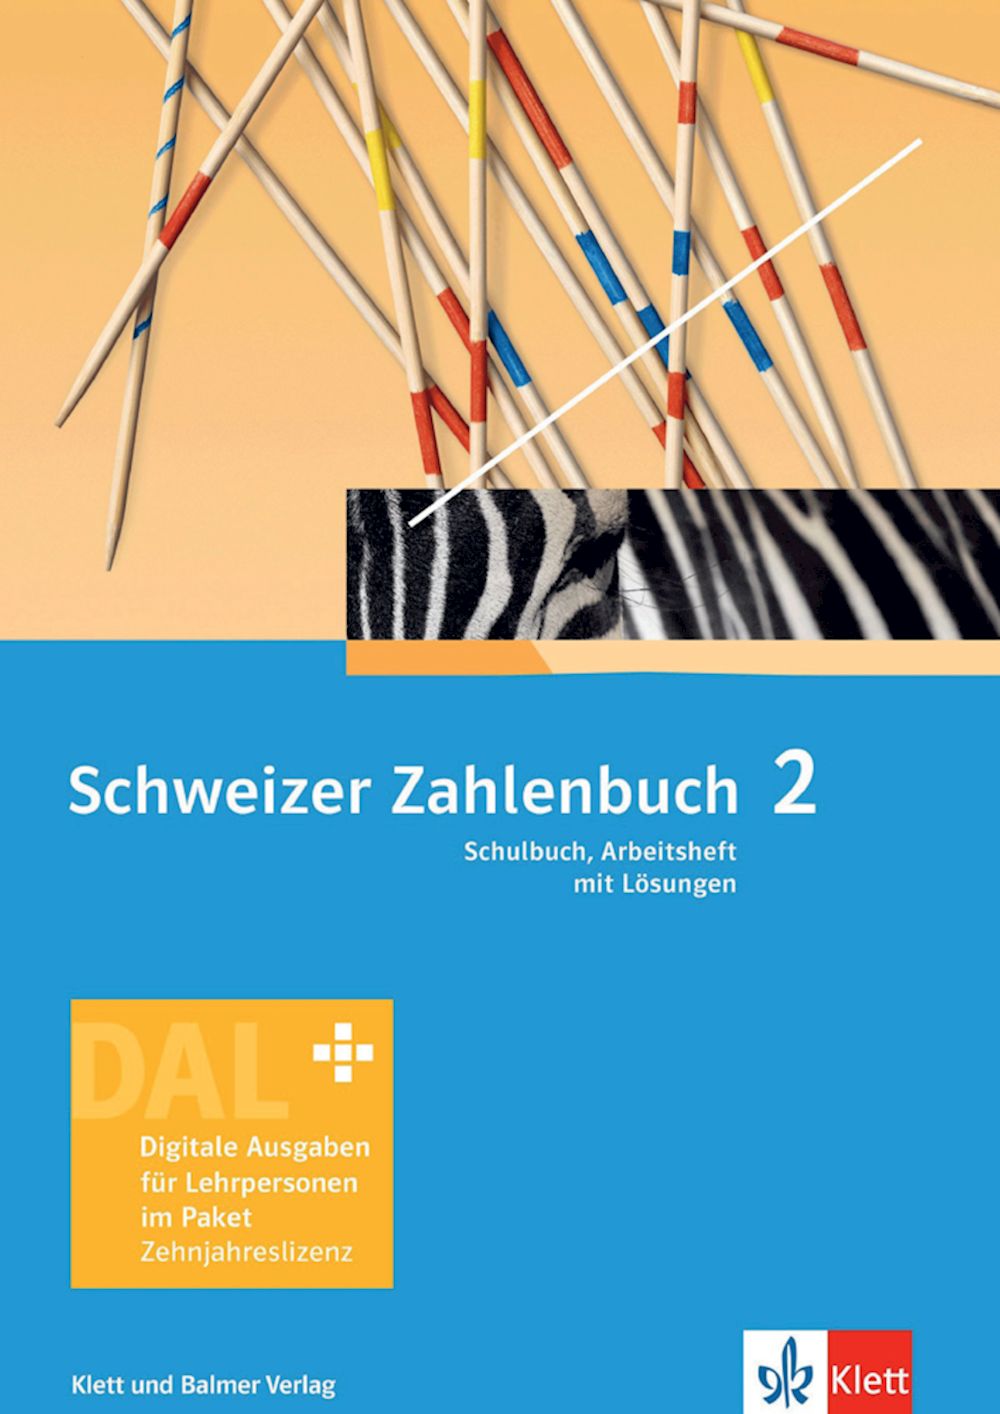 Schweizer Zahlenbuch 2, DAL, Schulbuch und Arbeitsheft, inkl. Lösungen